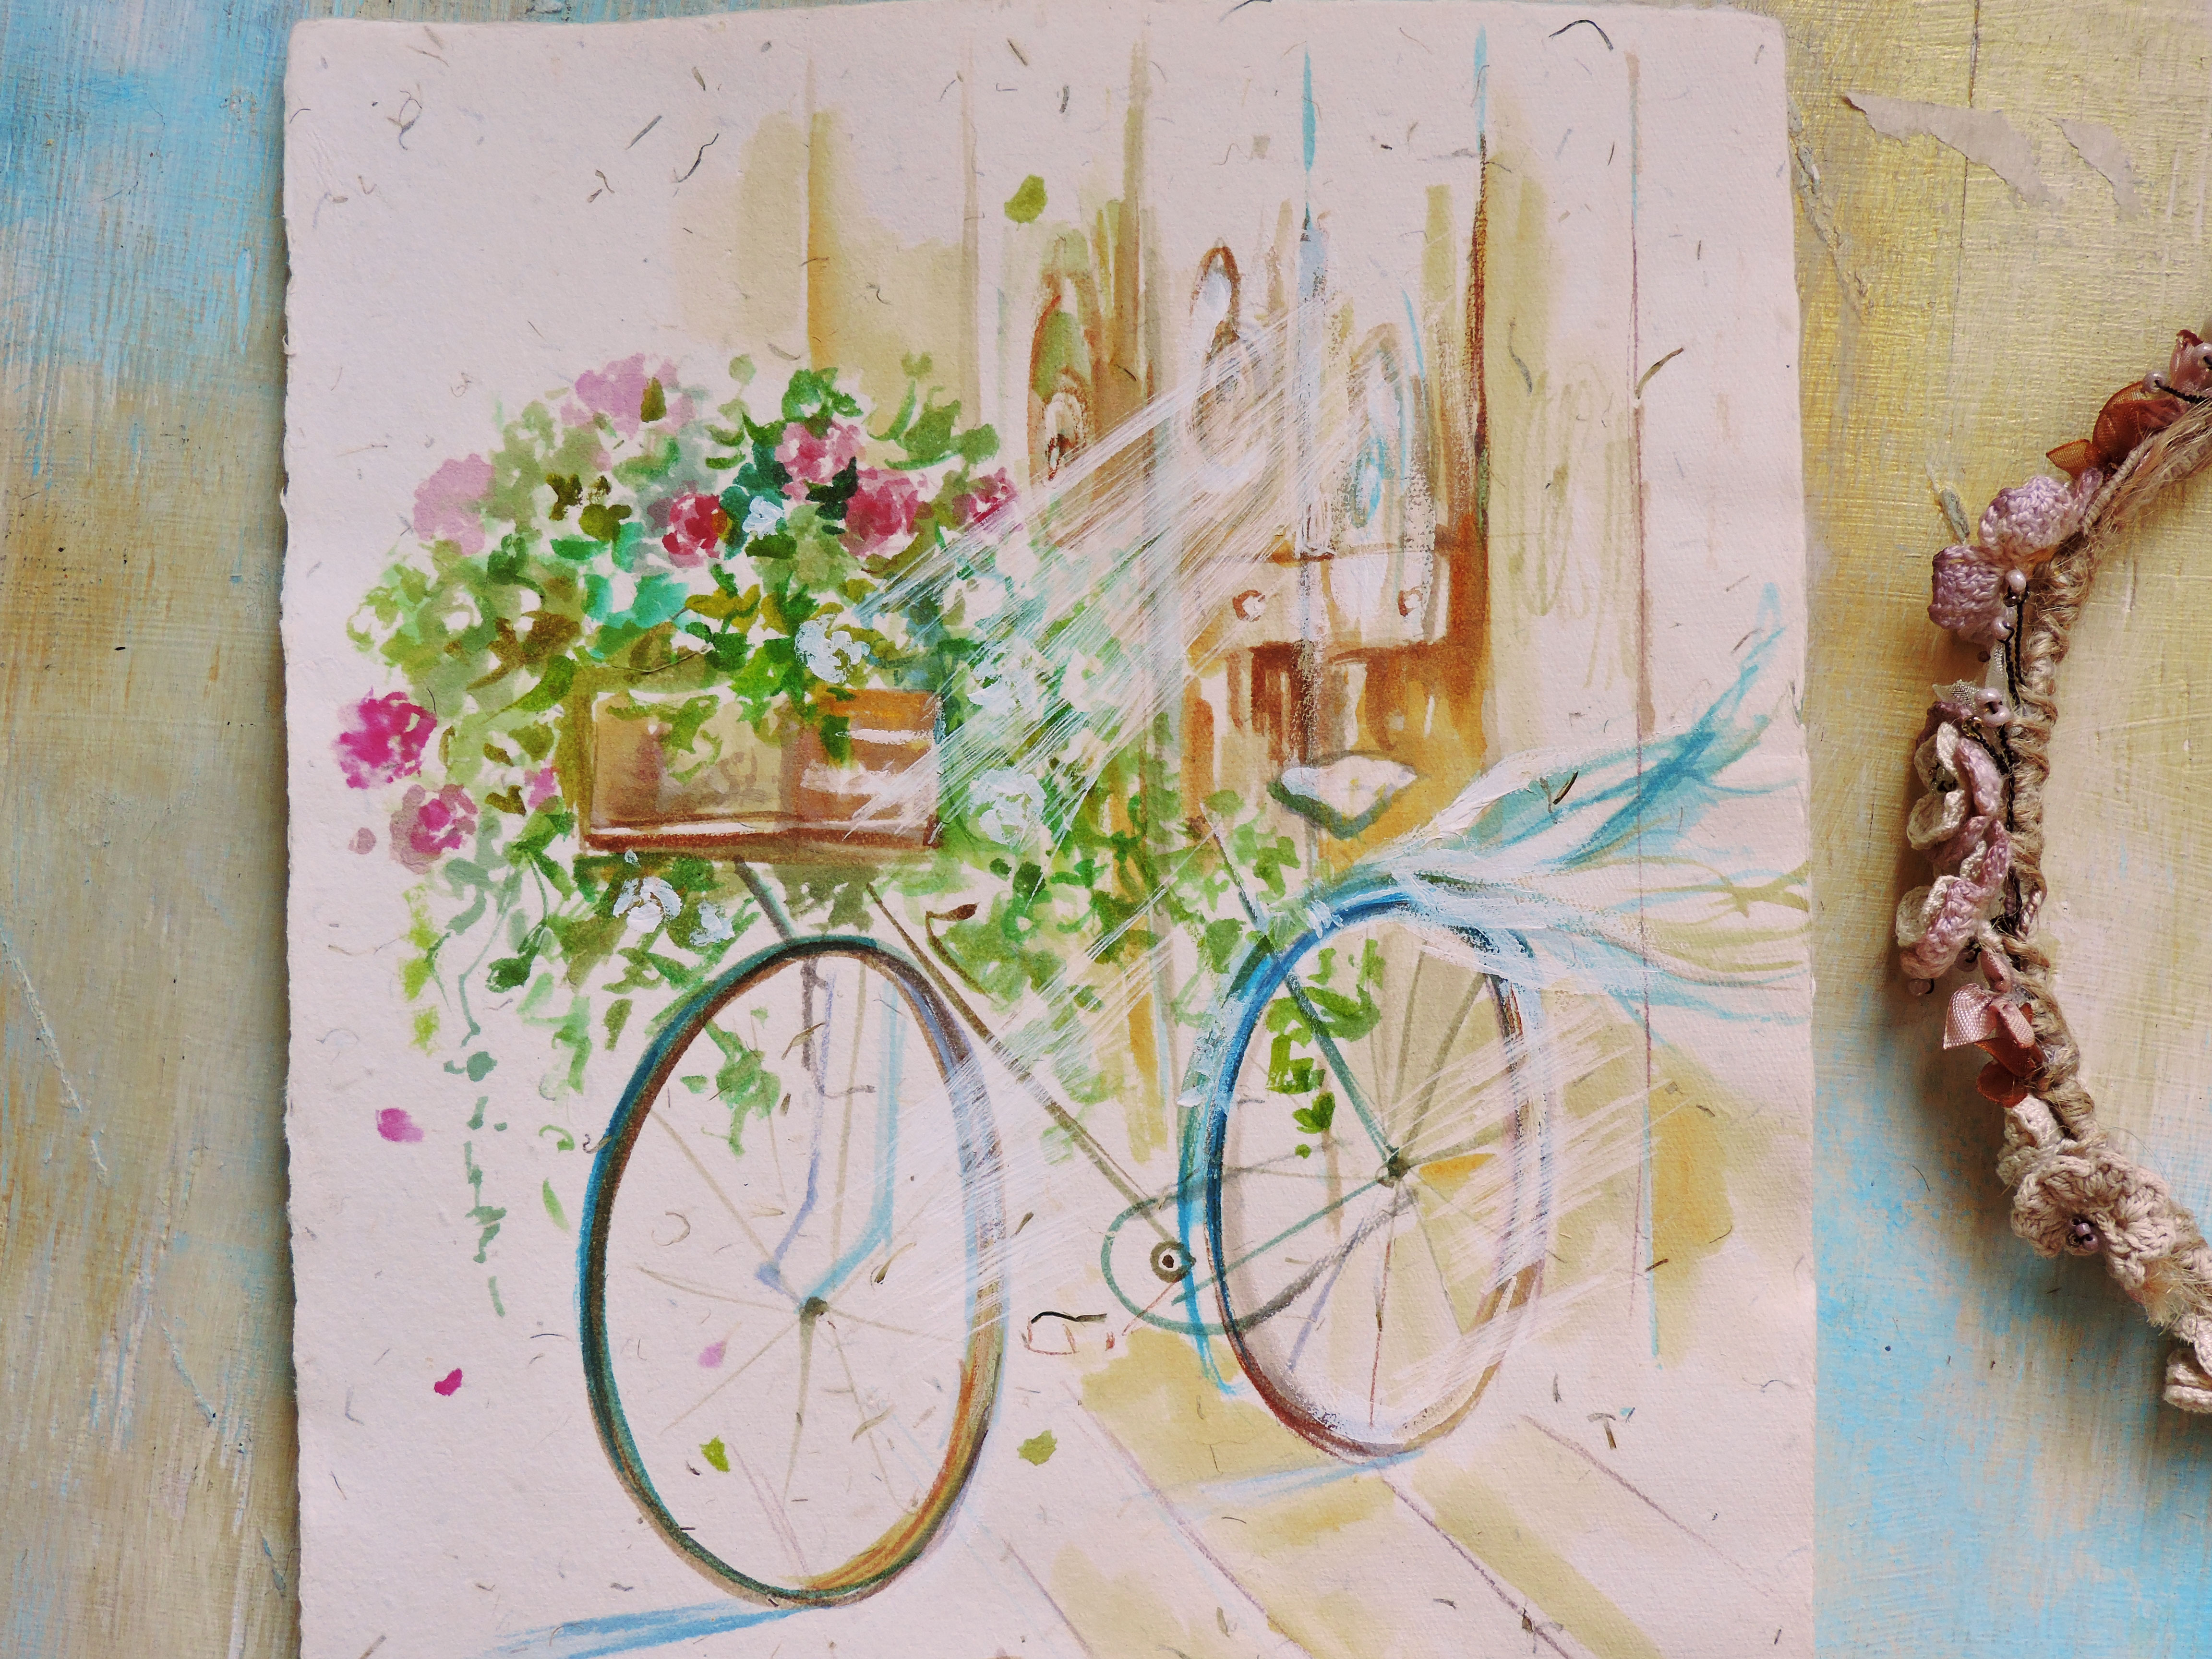 Цветочный велосипед Аннет Логинова